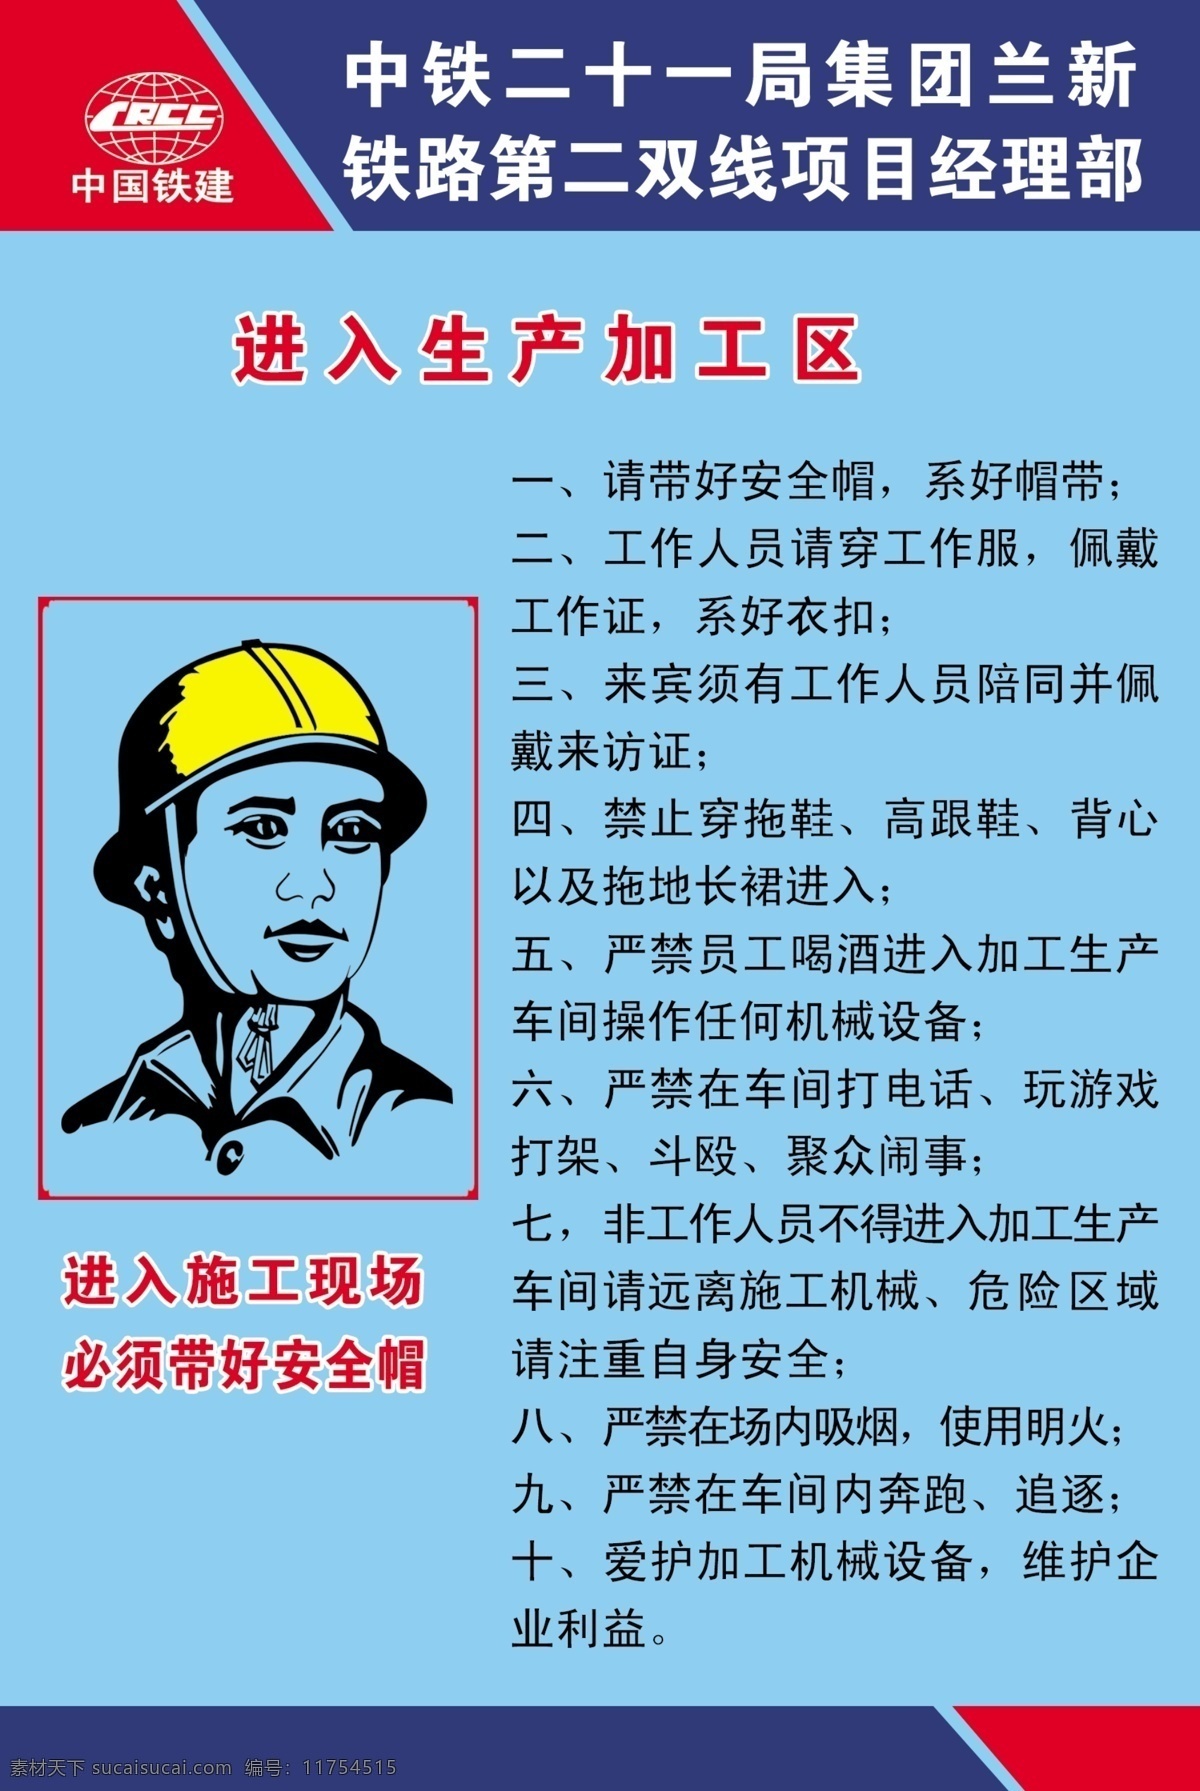 安全提示 安全帽 加工区 二十一局 中国铁建 兰新第二线 广告设计模板 源文件